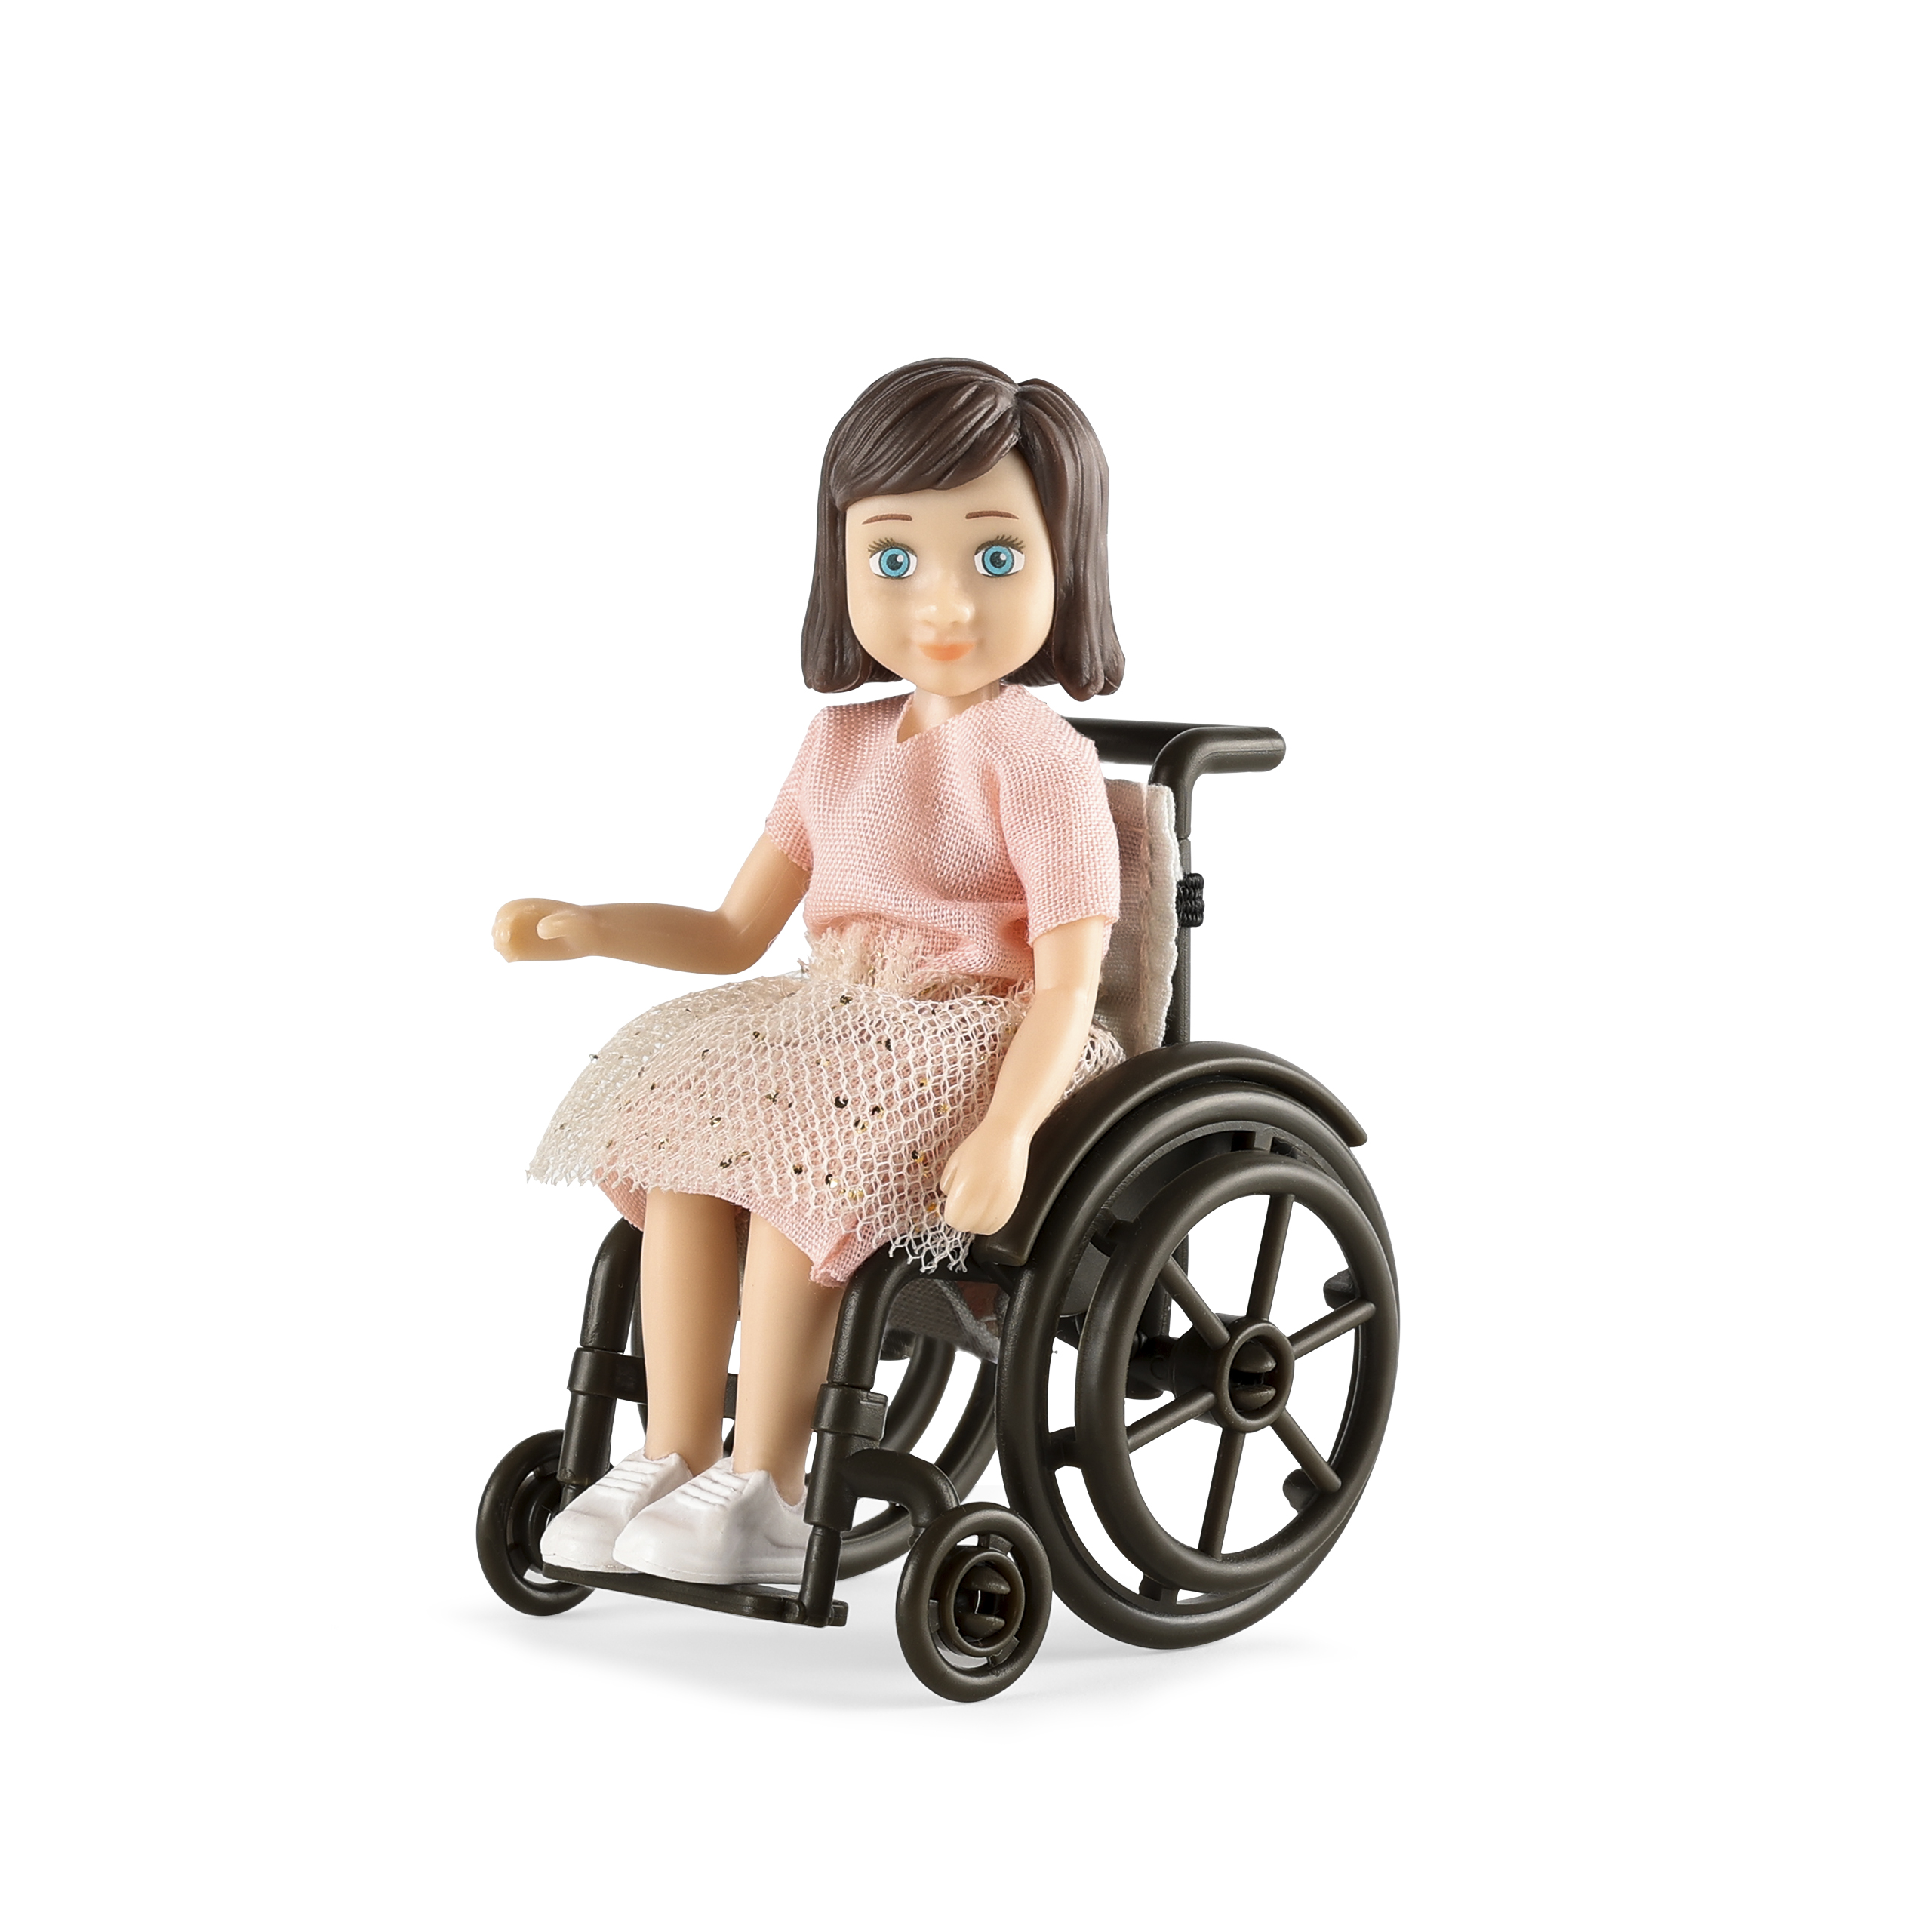 Lundby lundby	dukke til dukkehus	med kørestol